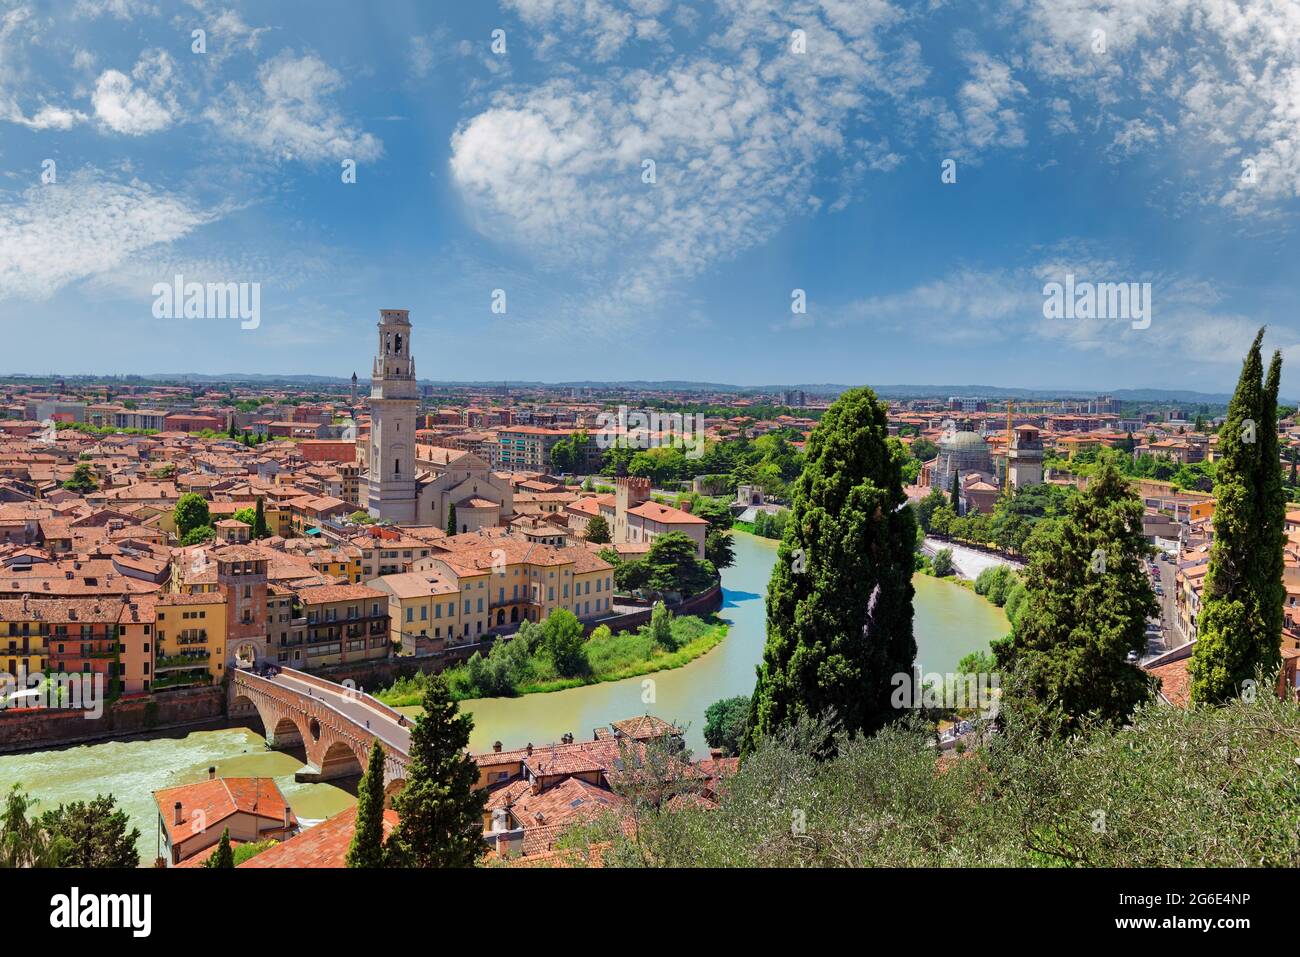 Vista sulla città di Verona con il ponte in pietra e il fiume Adige, Castel San Pietro, Verona, Veneto, Italia Foto Stock